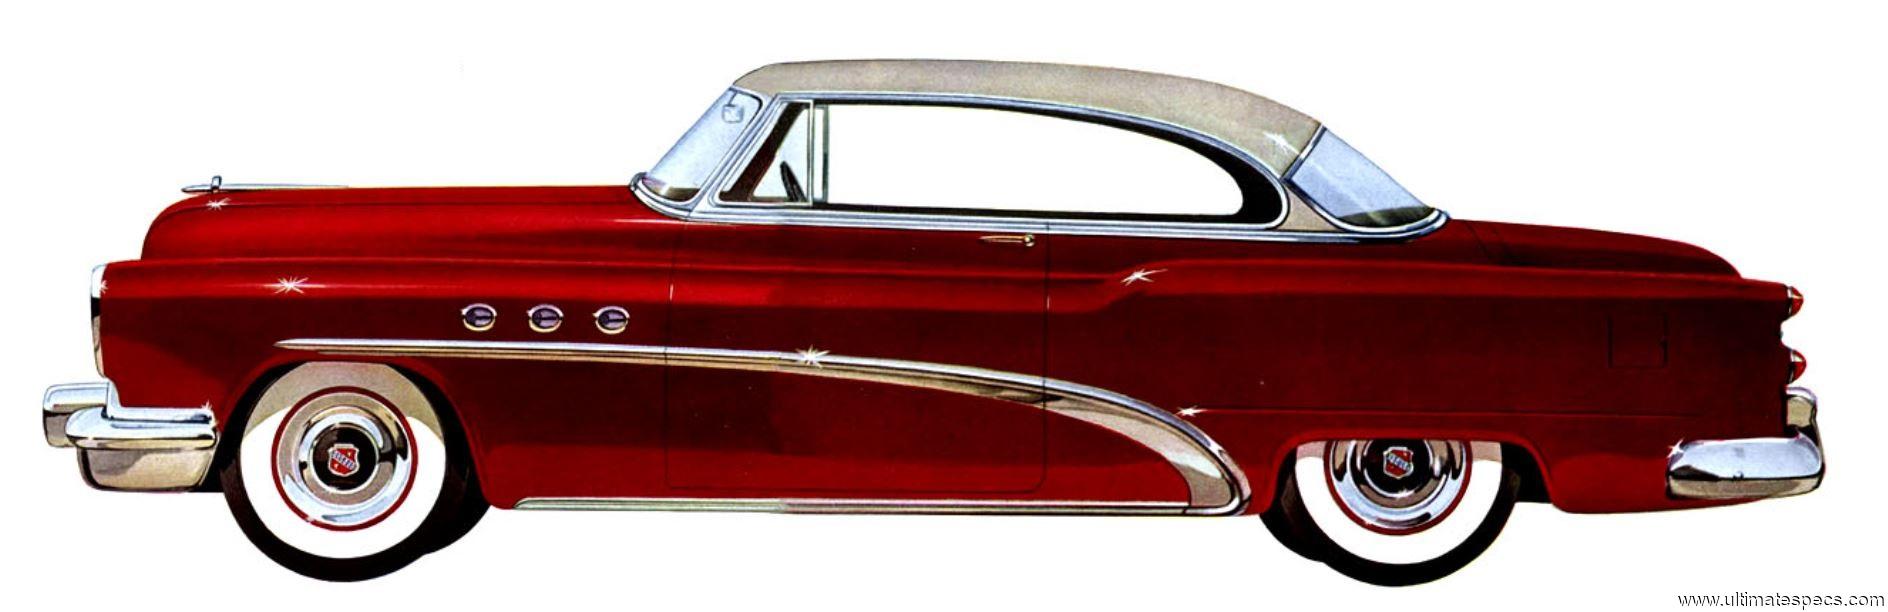 Buick Special Riviera Hardtop 1953